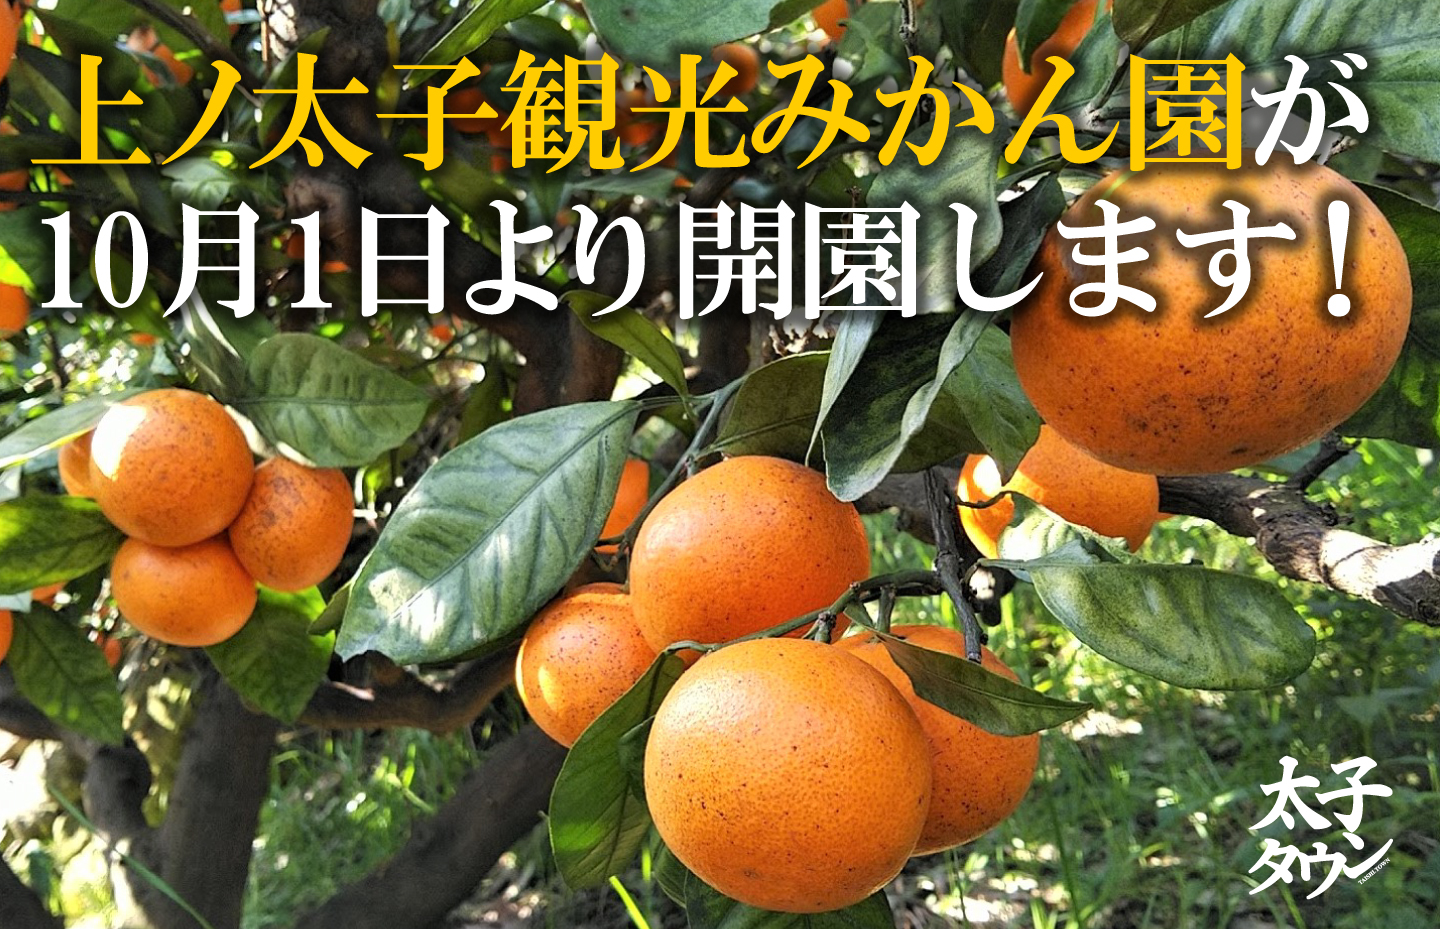 上ノ太子観光みかん園が10月1日より開園します！